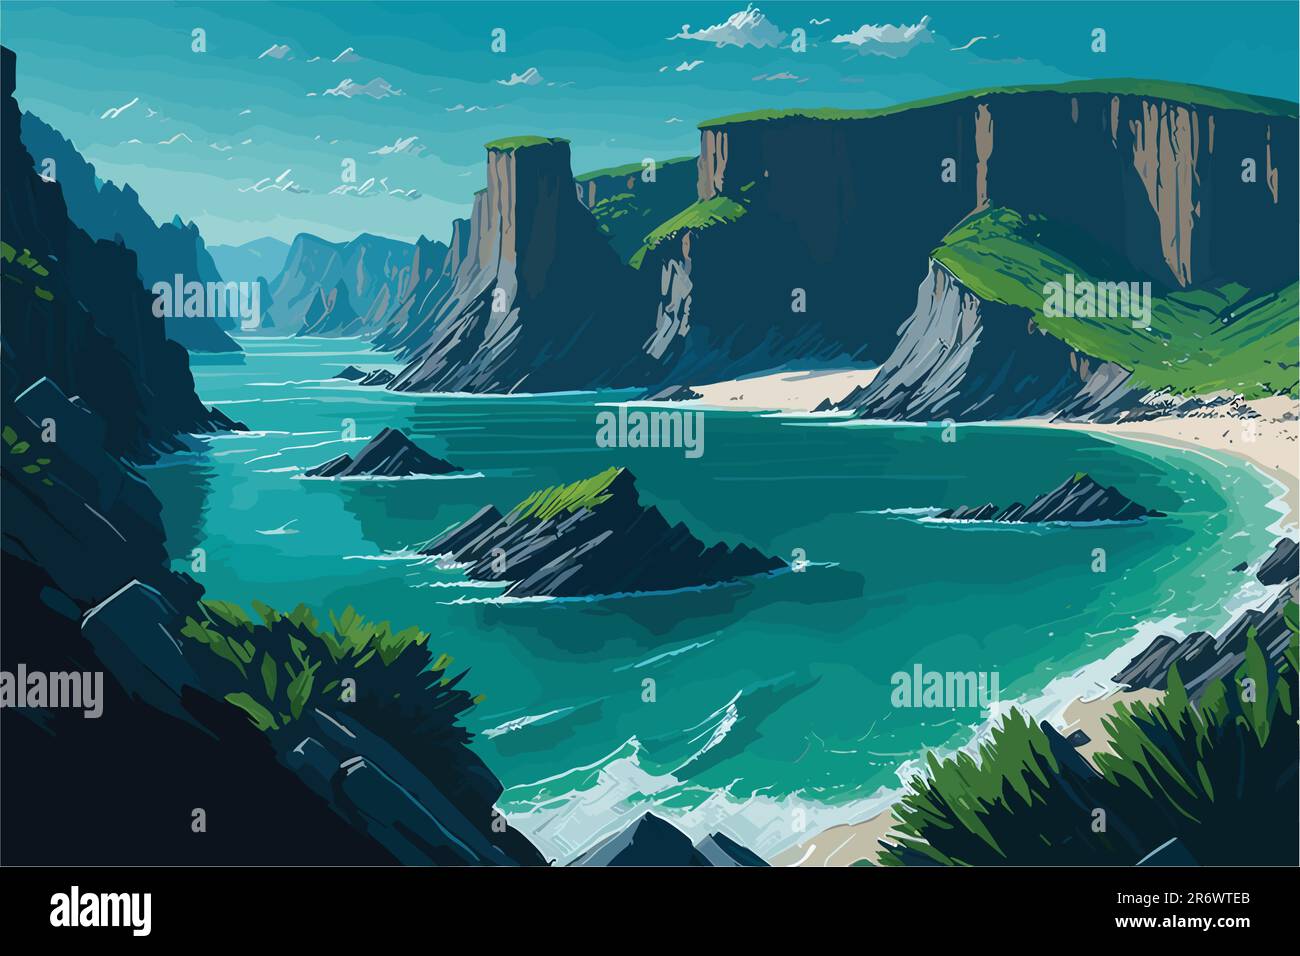 Une crique côtière sereine entourée de falaises imposantes, avec des eaux vertes émeraudes, une plage de sable isolée, et des mouettes qui s'envolent dans le ciel bleu clair Illustration de Vecteur